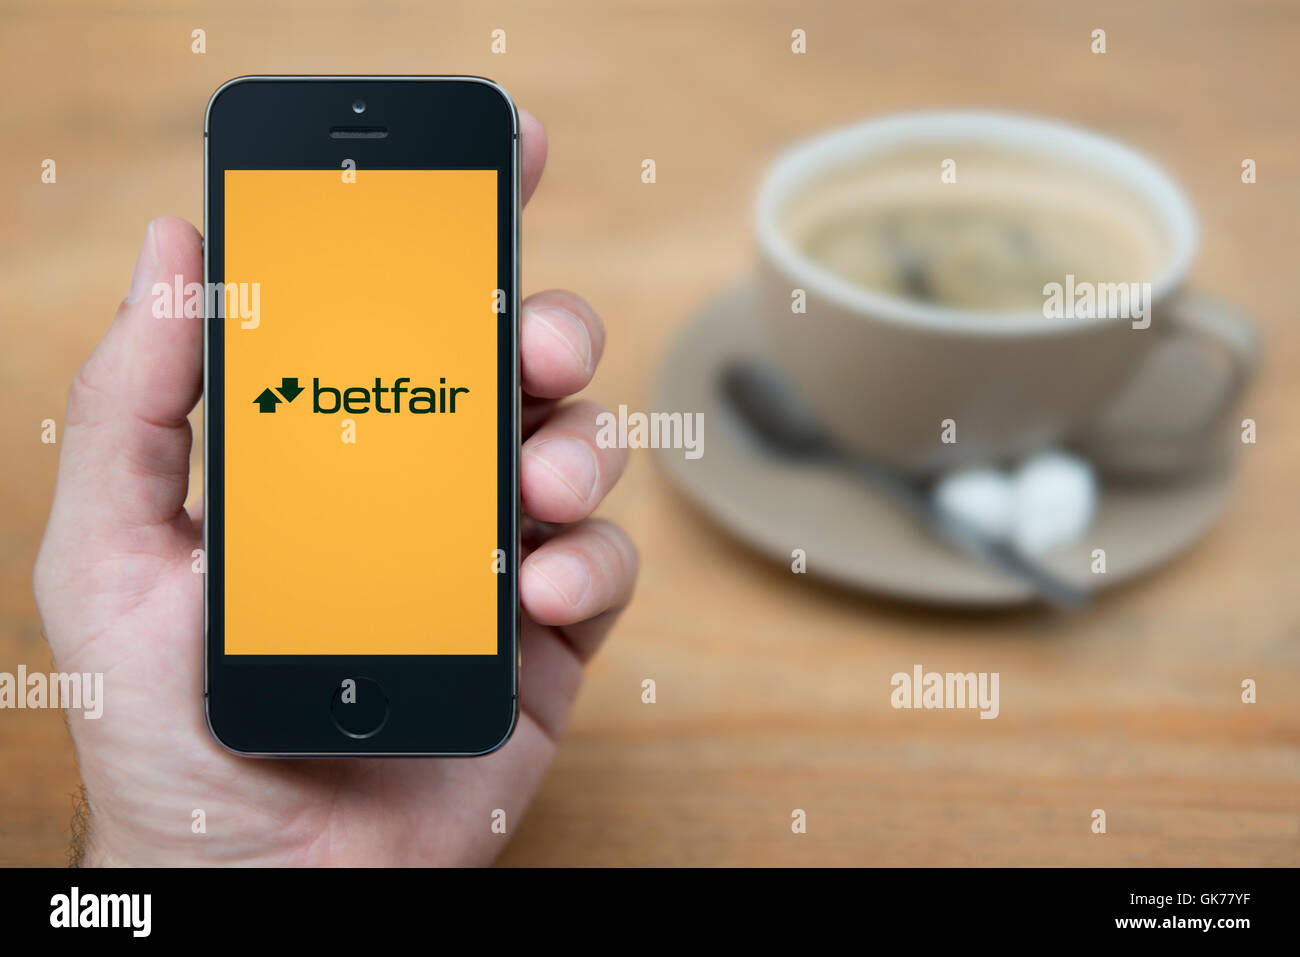 Ein Mann schaut auf seinem iPhone die Betfair-Logo anzeigt, während bei einer Tasse Kaffee (nur zur redaktionellen Verwendung) saß. Stockfoto